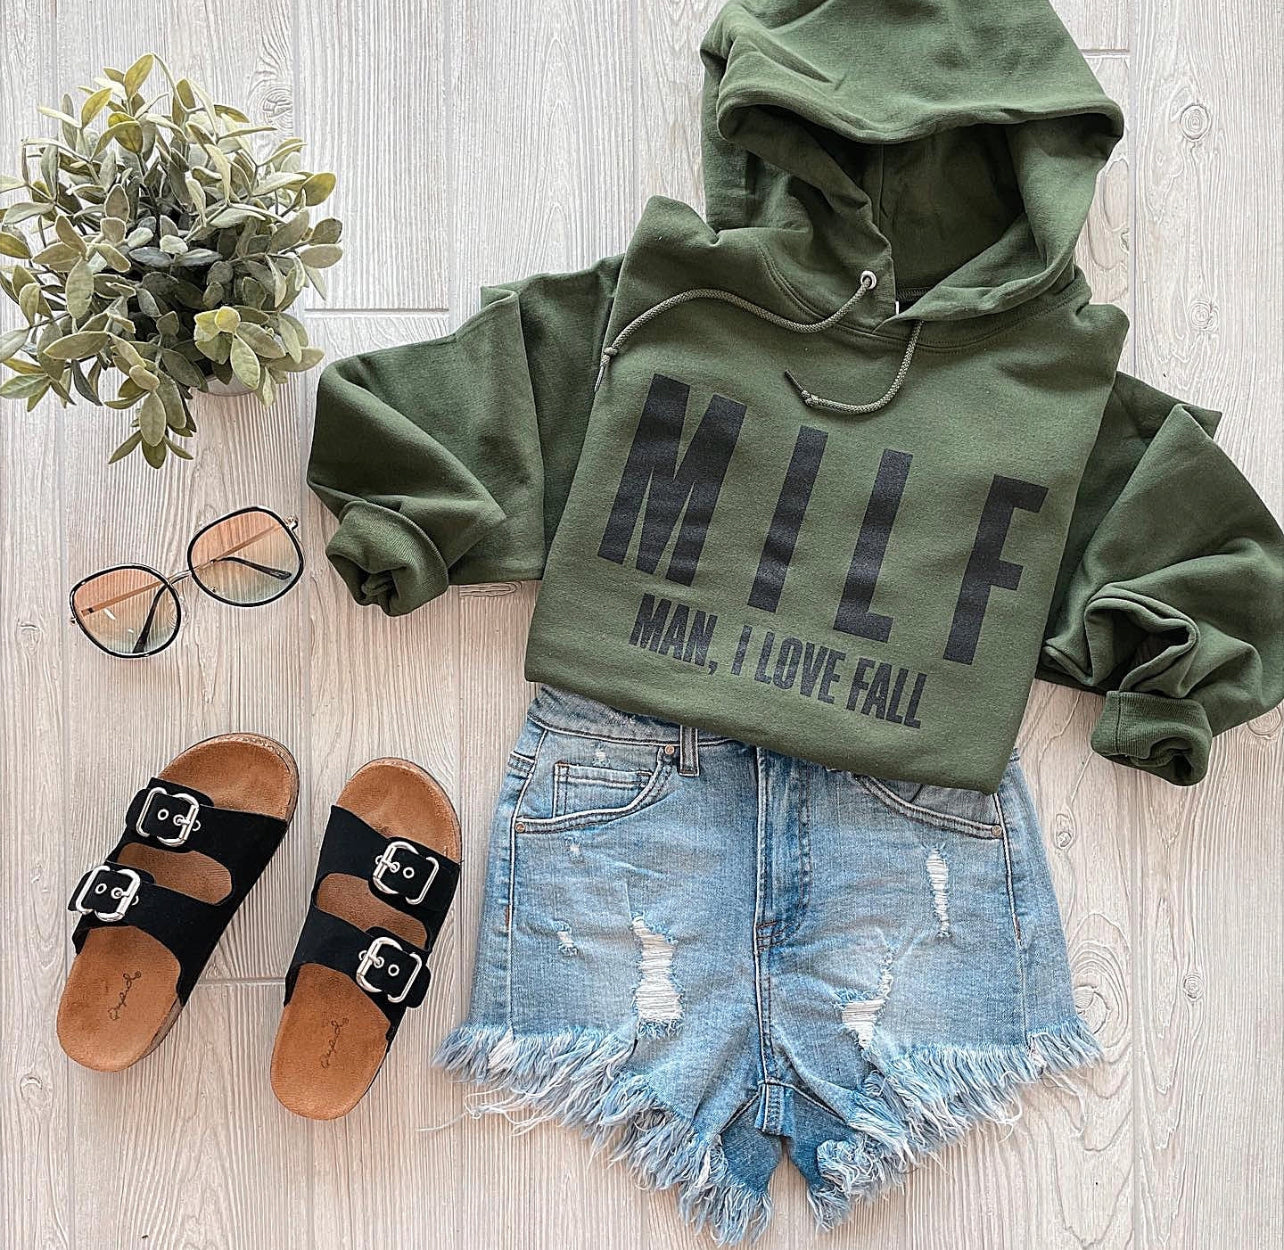 MILF- Olive Green Hoodie Sweatshirt or Tee